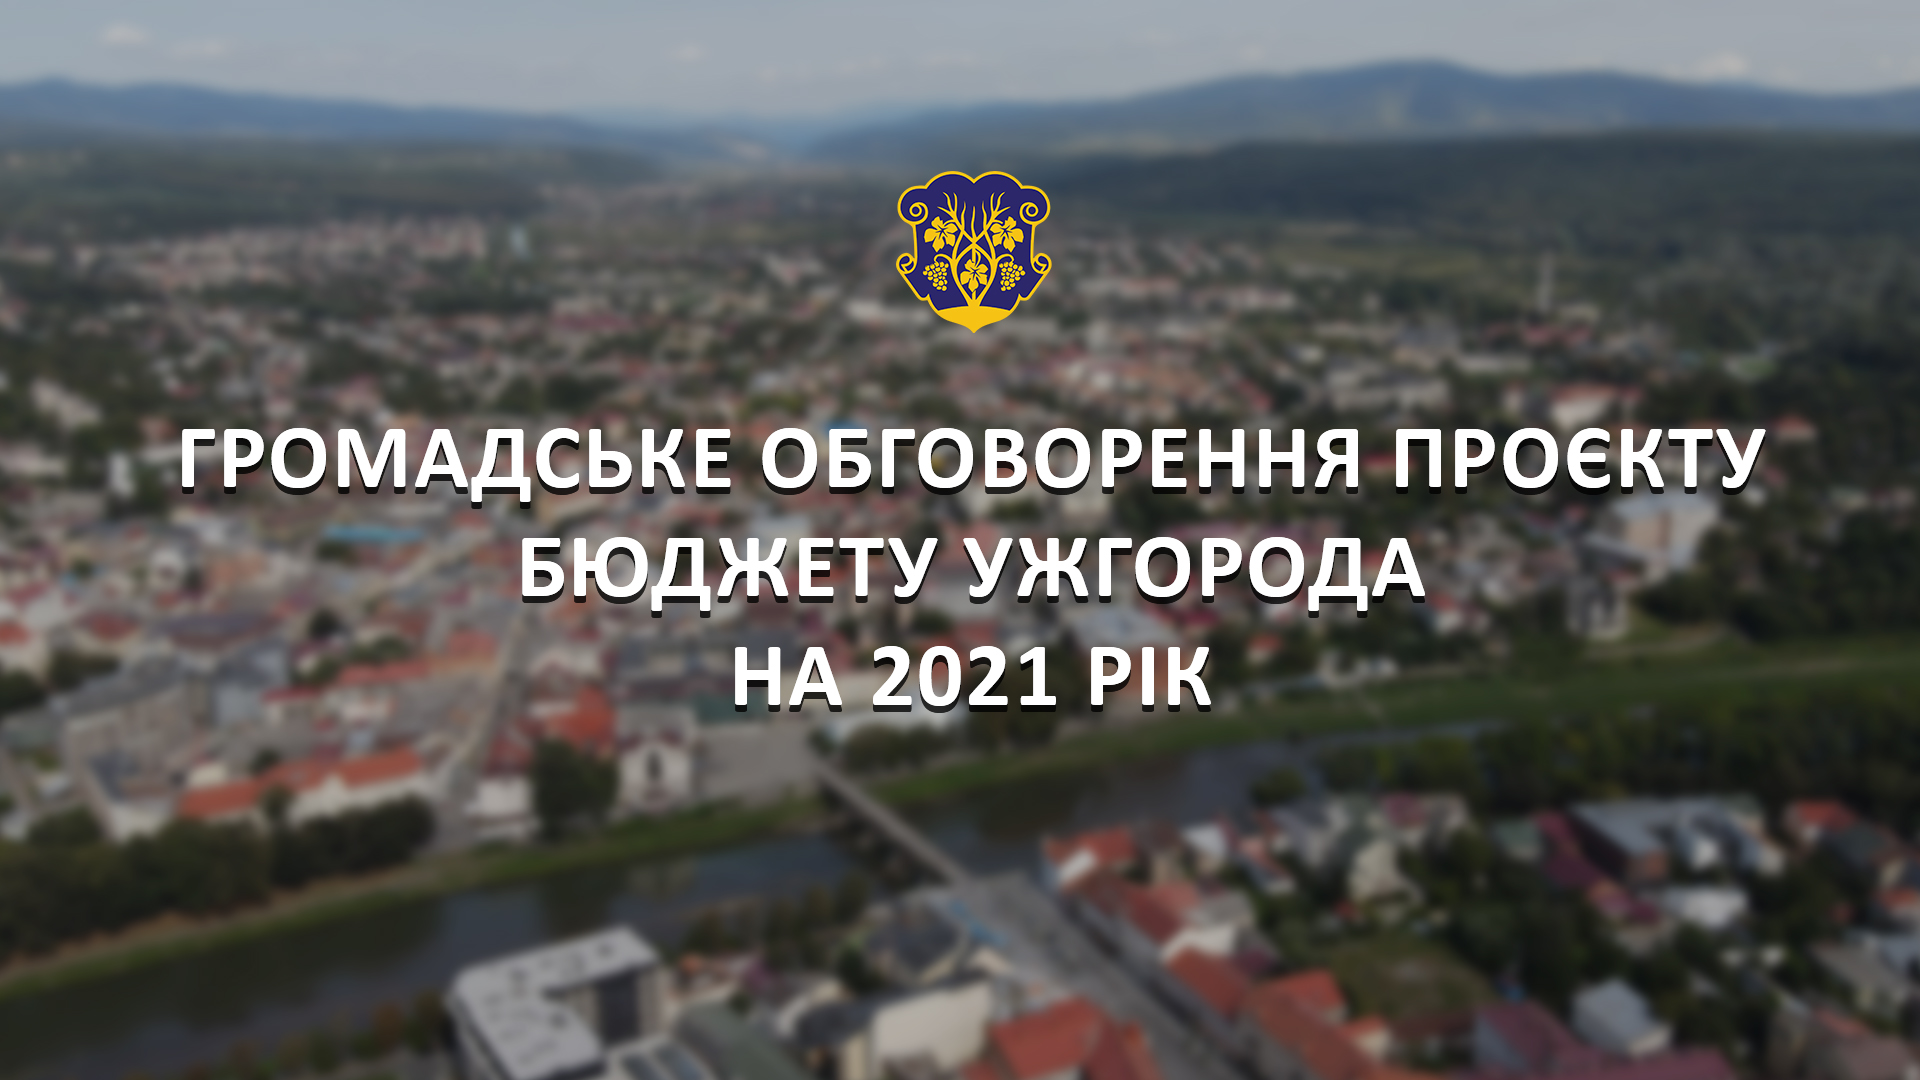 Громадське обговорення проєкту рішення про бюджет Ужгорода на 2021 рік відбудется онлайн 